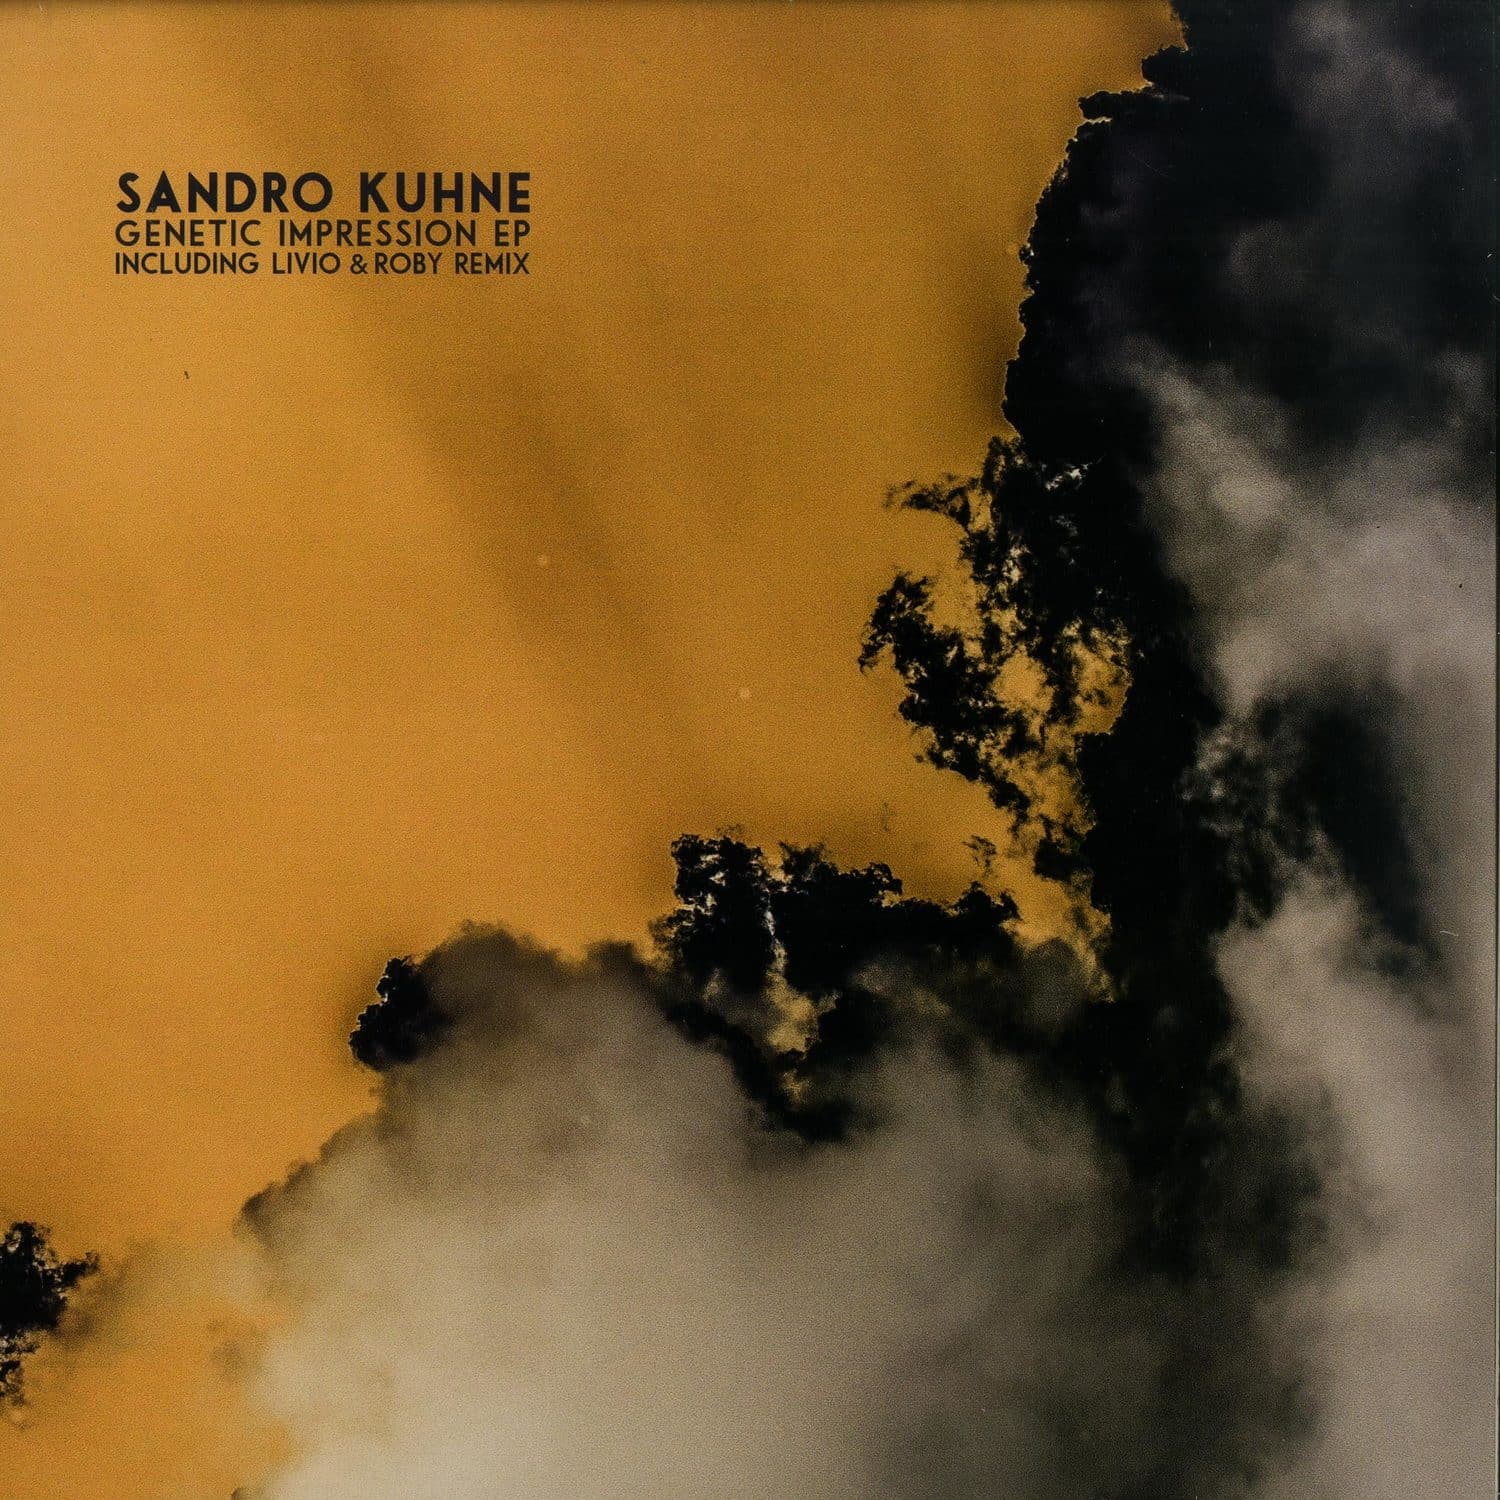 Sandro Kuhne - GENETIC IMPRESSION EP 